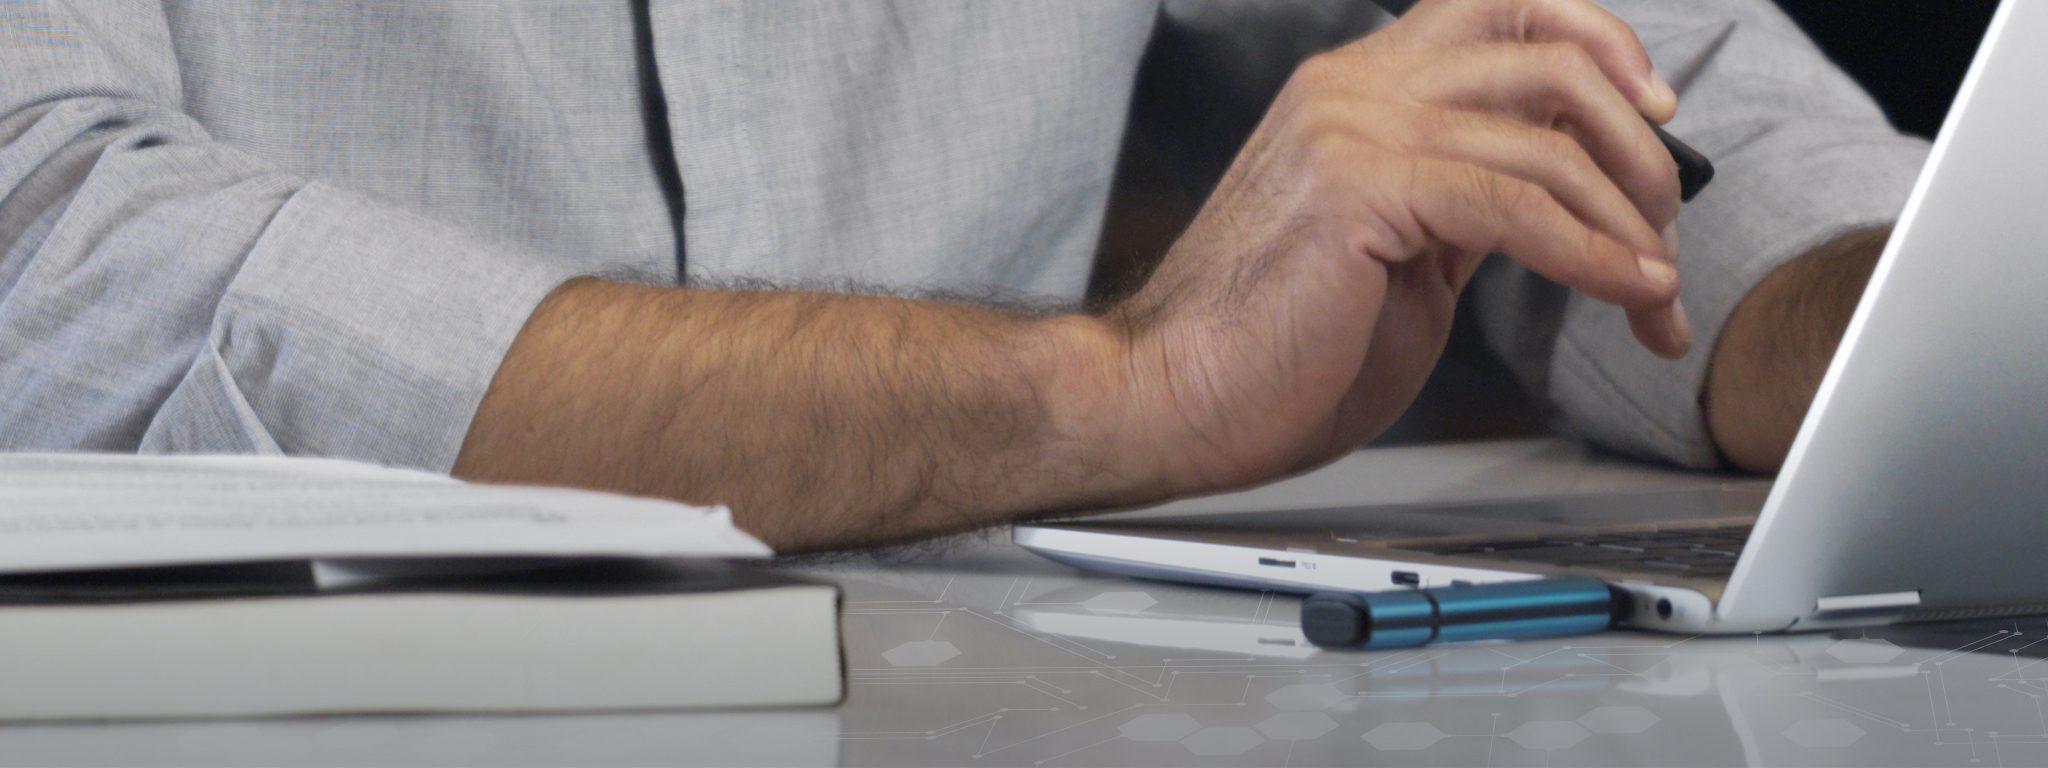 一個男人在鍵盤上打字，筆記型電腦上插入 Kingston IronKey USB 隨身碟的特寫畫面